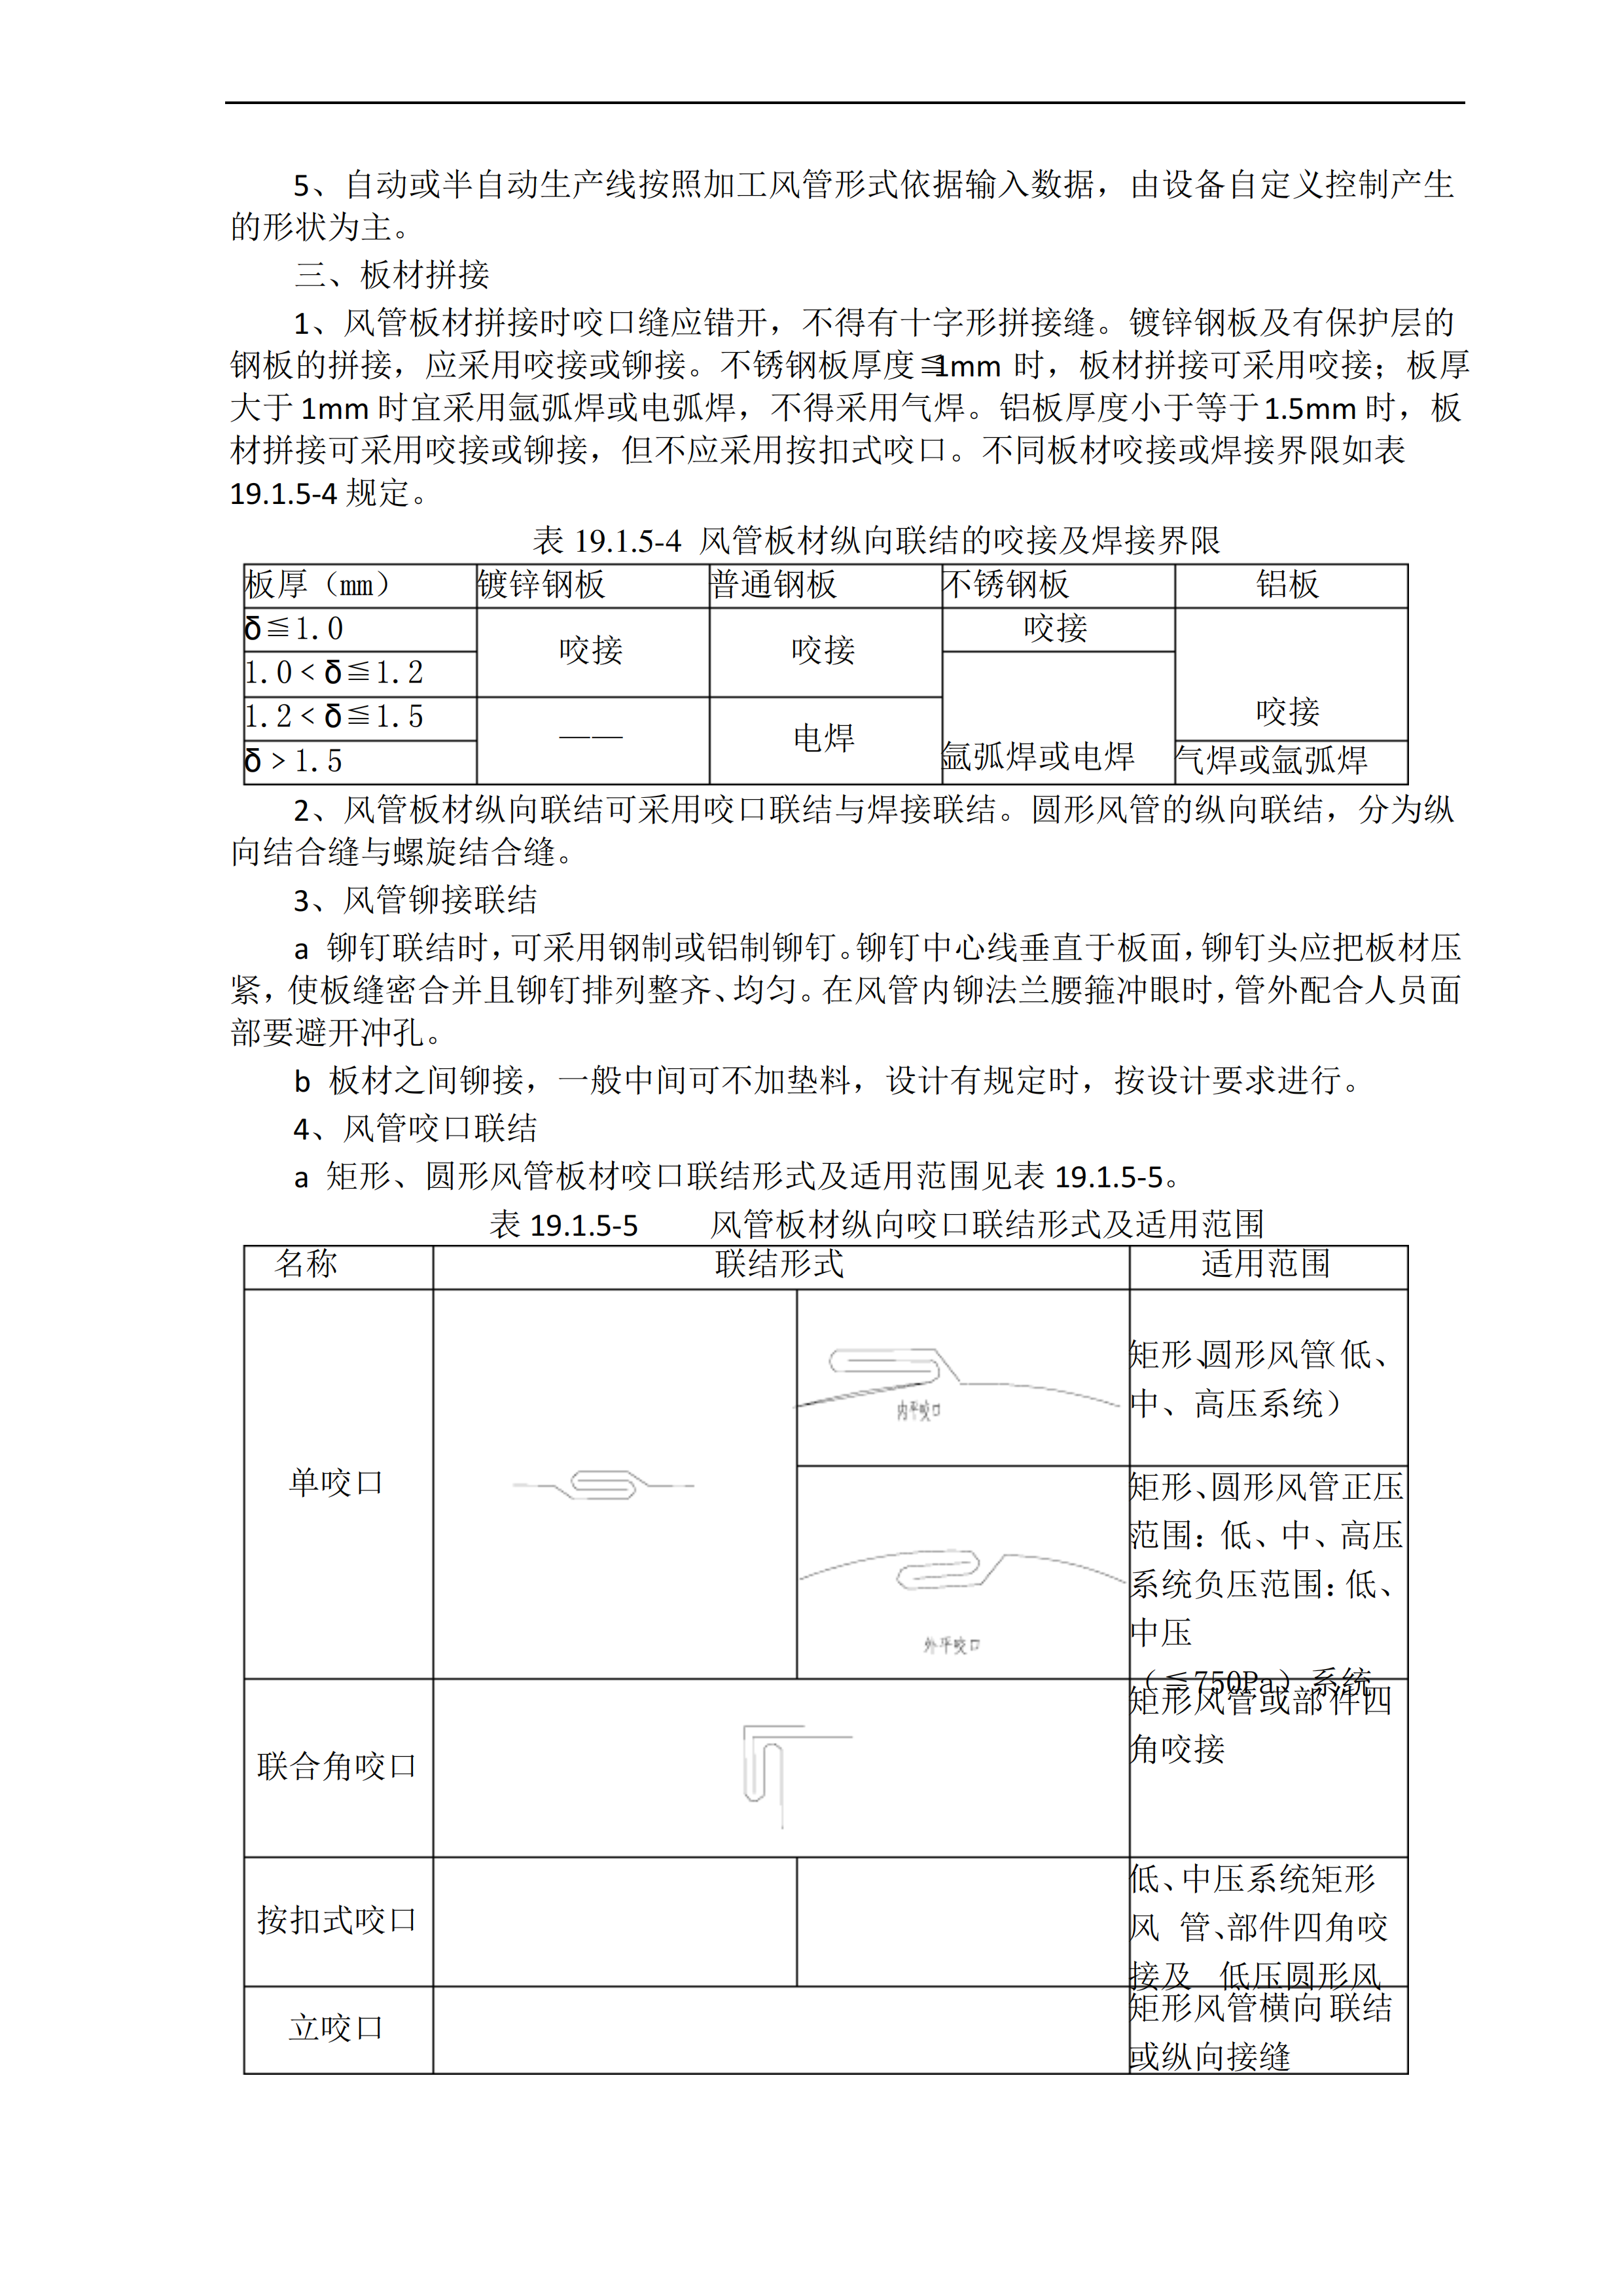 通风空调工程作业指导书插图(3)